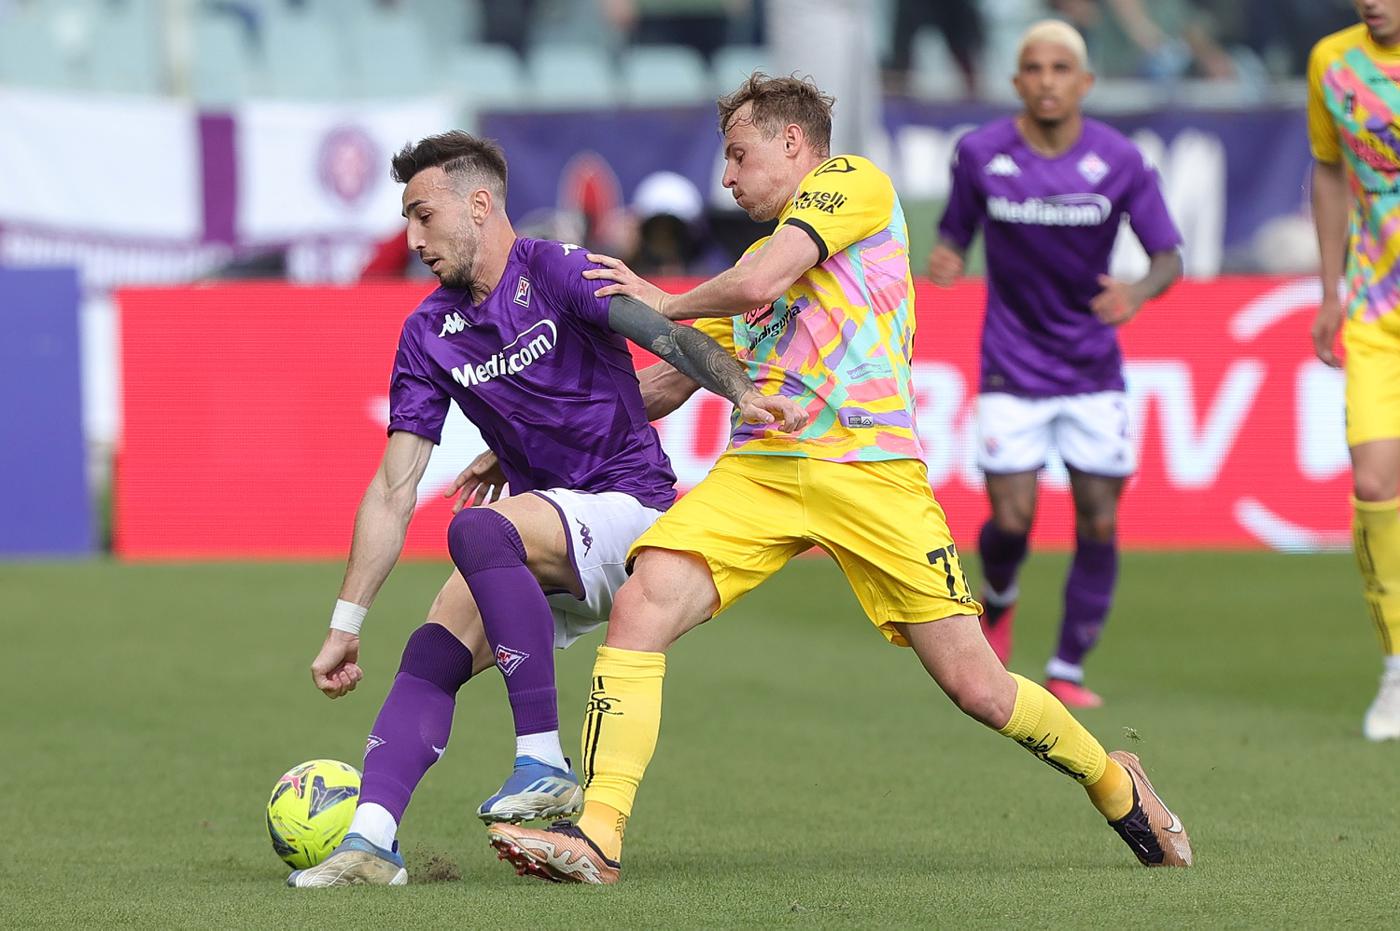 Fiorentina - La Spezia: where to watch, online broadcast (April 8)